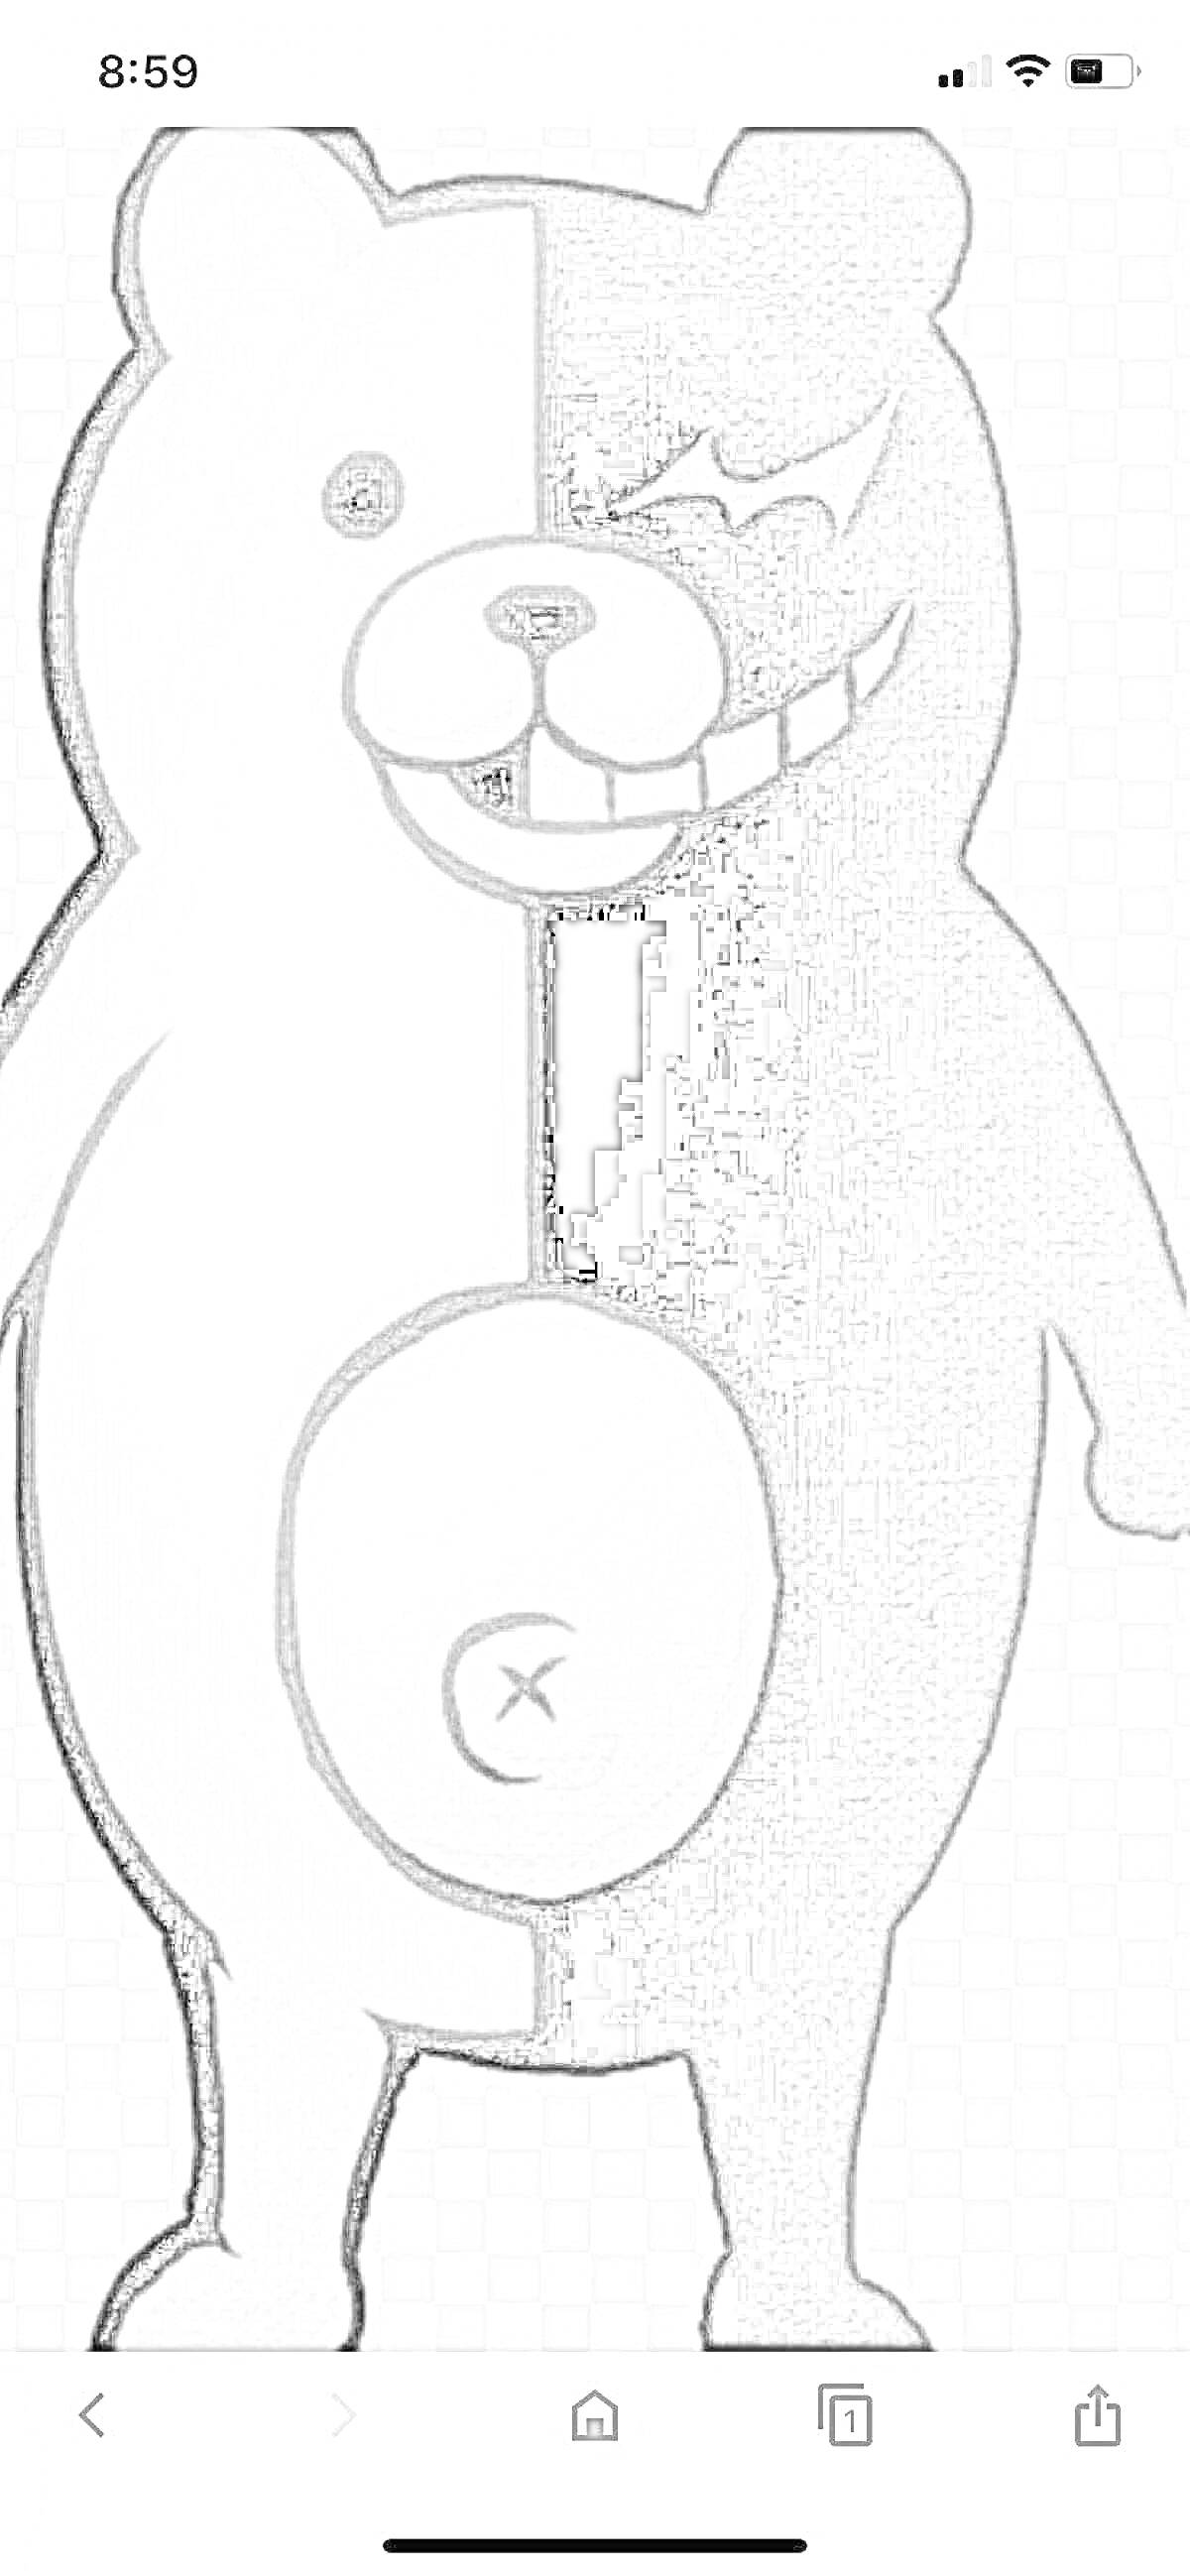 Раскраска Монокума - черно-белый медведь с контрастными половинками тела, одна половина злая с красным глазом и улыбкой, другая добрая